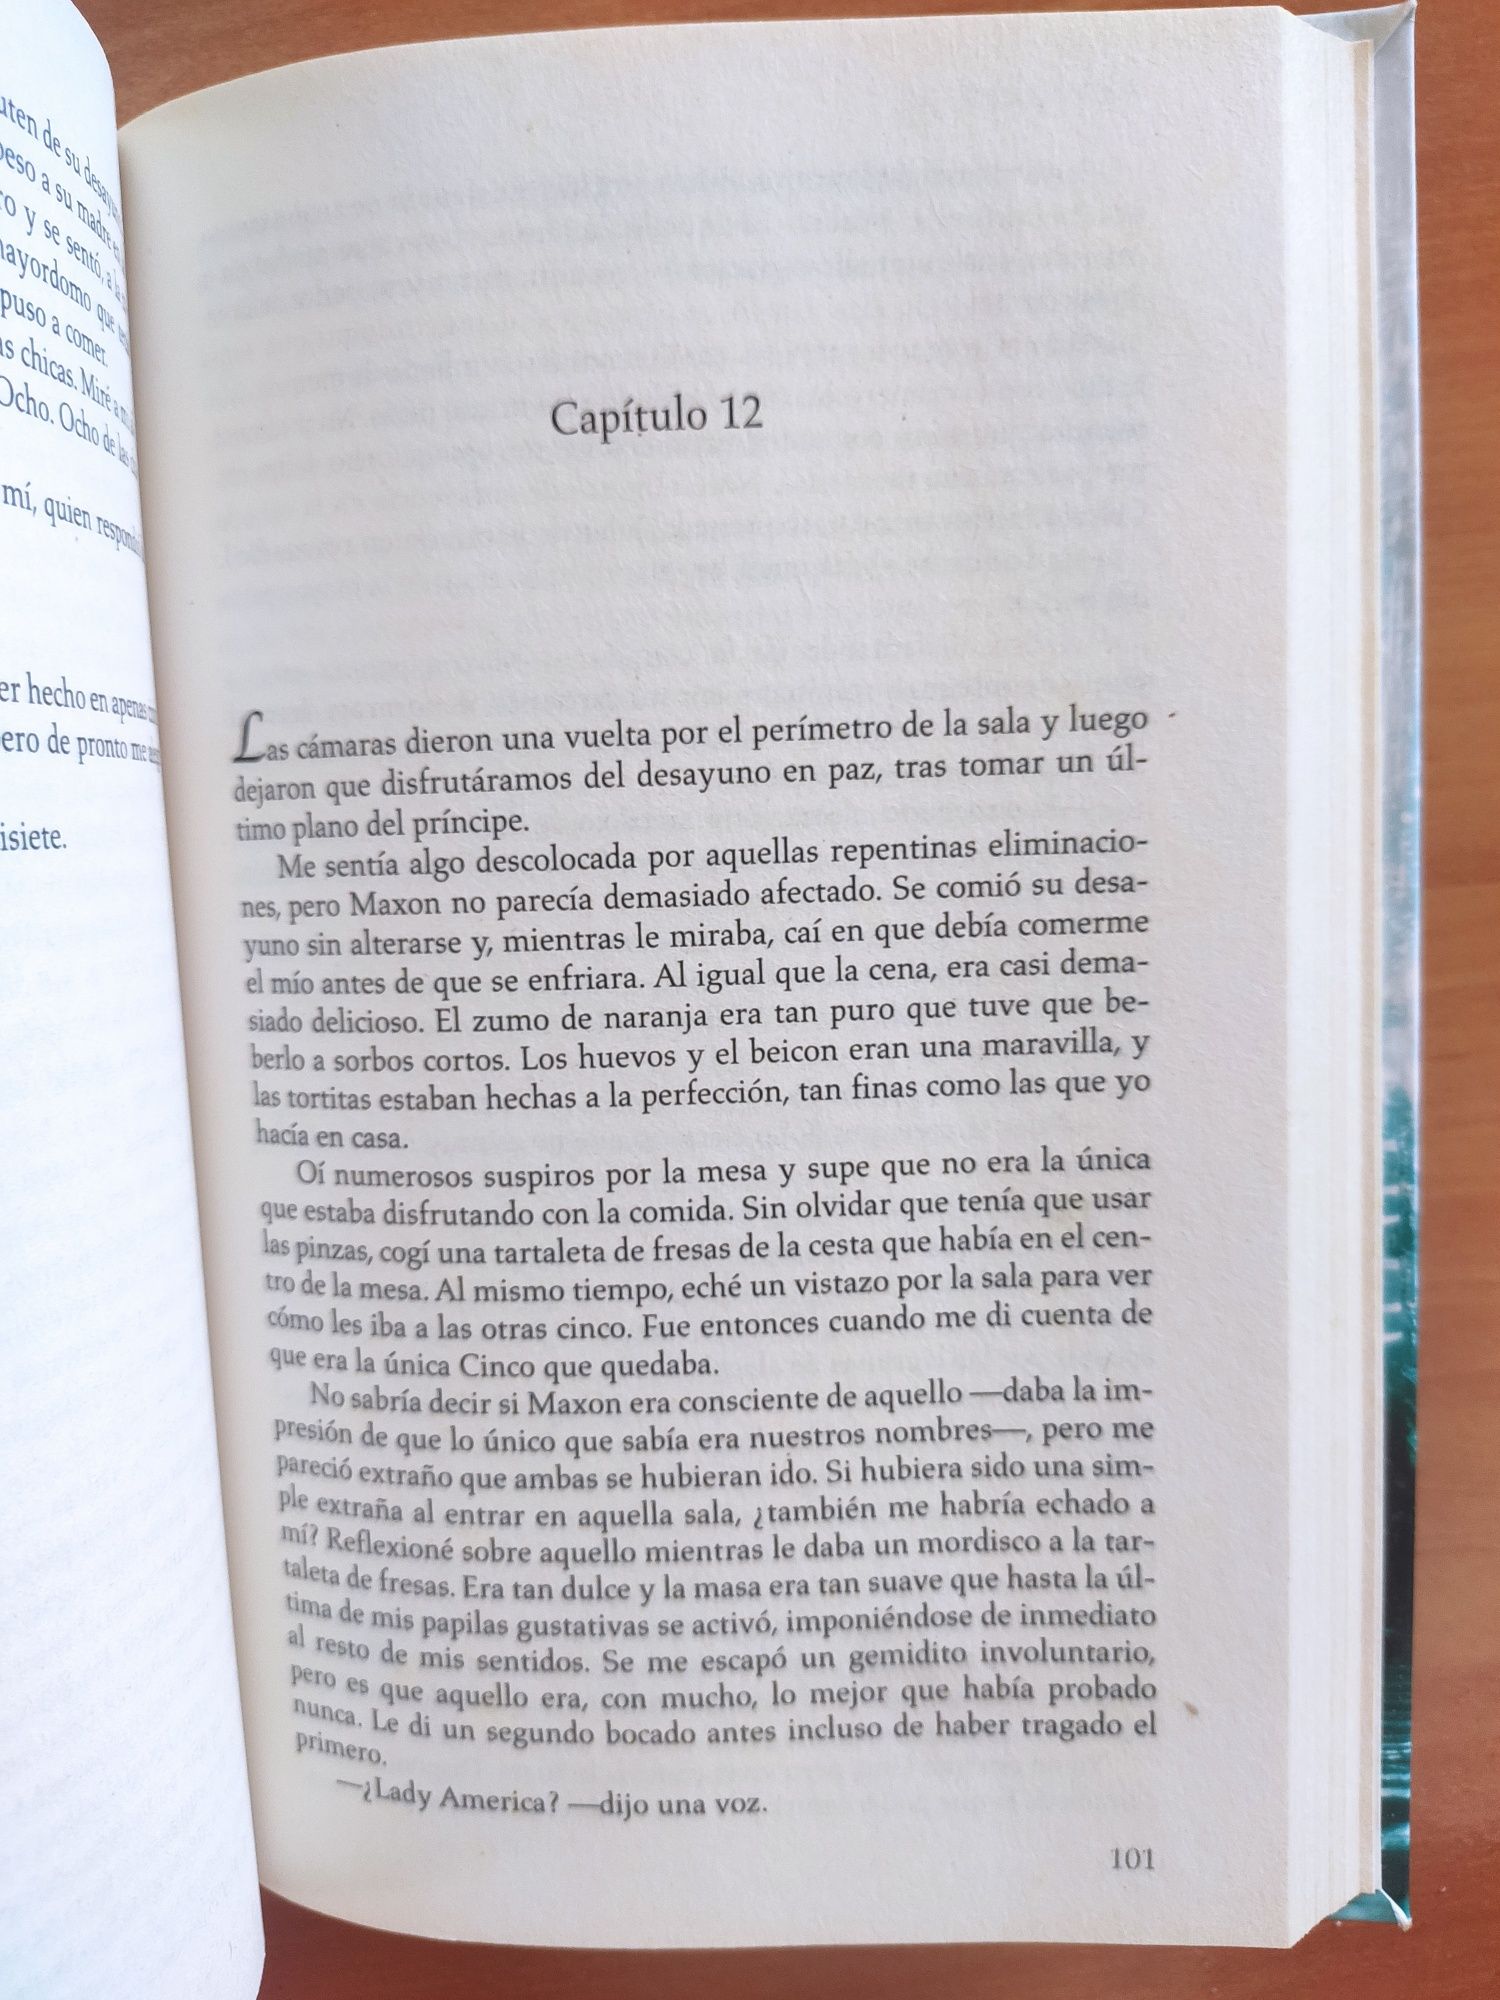 Livro "A Seleção" e "A Evolução de Calpurnia Tate" em espanhol